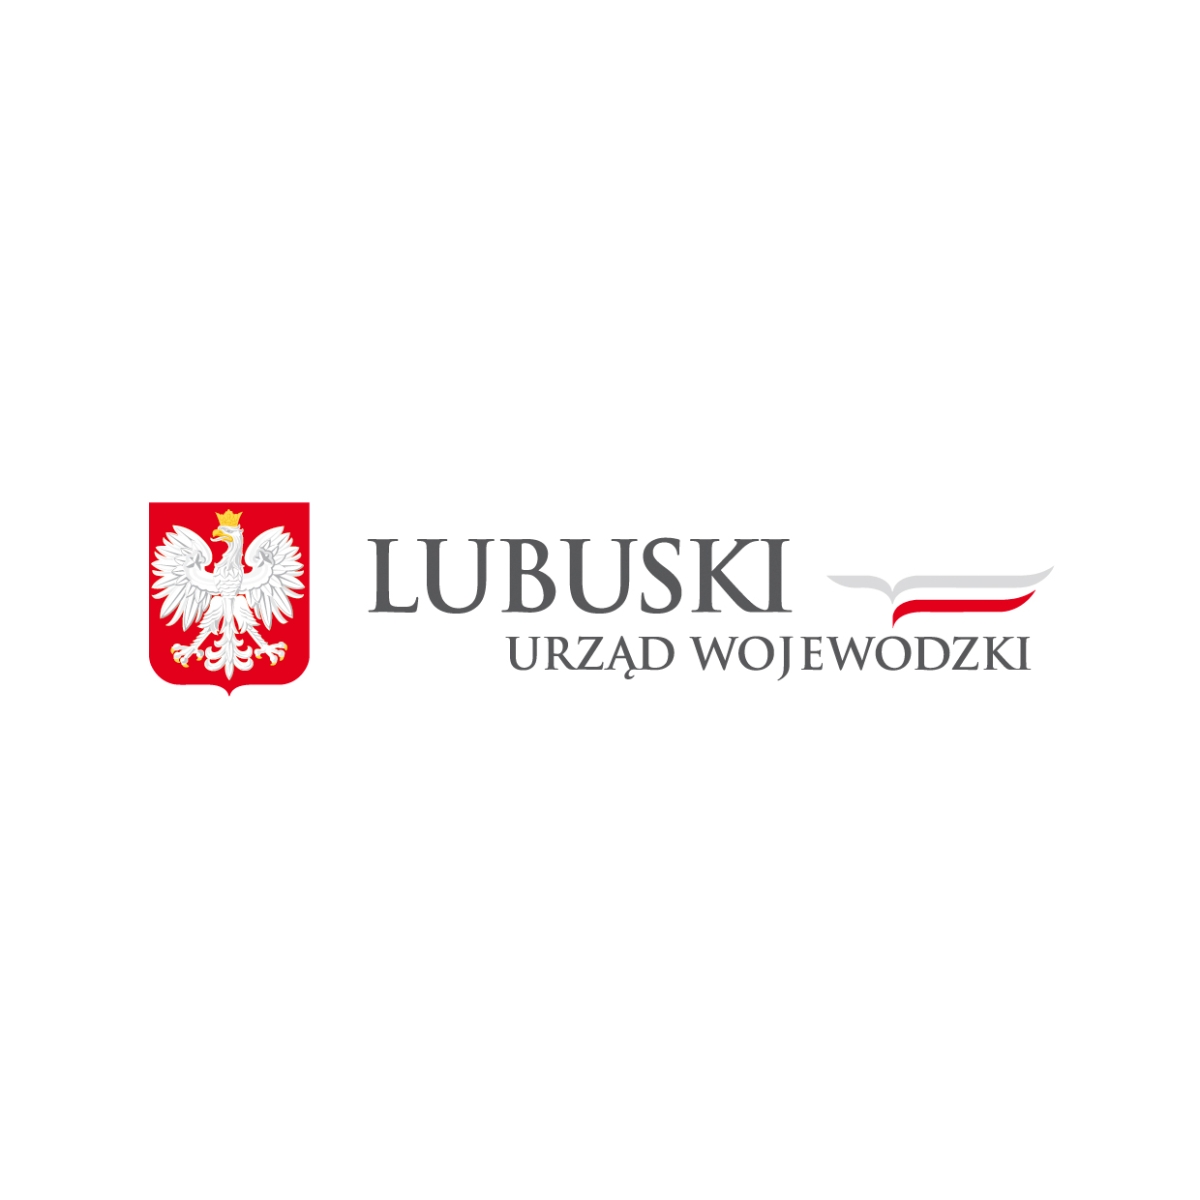 Rozporządzenie Wojewody Lubuskiego z dn. 24 października 2022 r. w sprawie odstrzału sanitarnego dzików na obszarze Parku Narodowego „Ujście Warty”